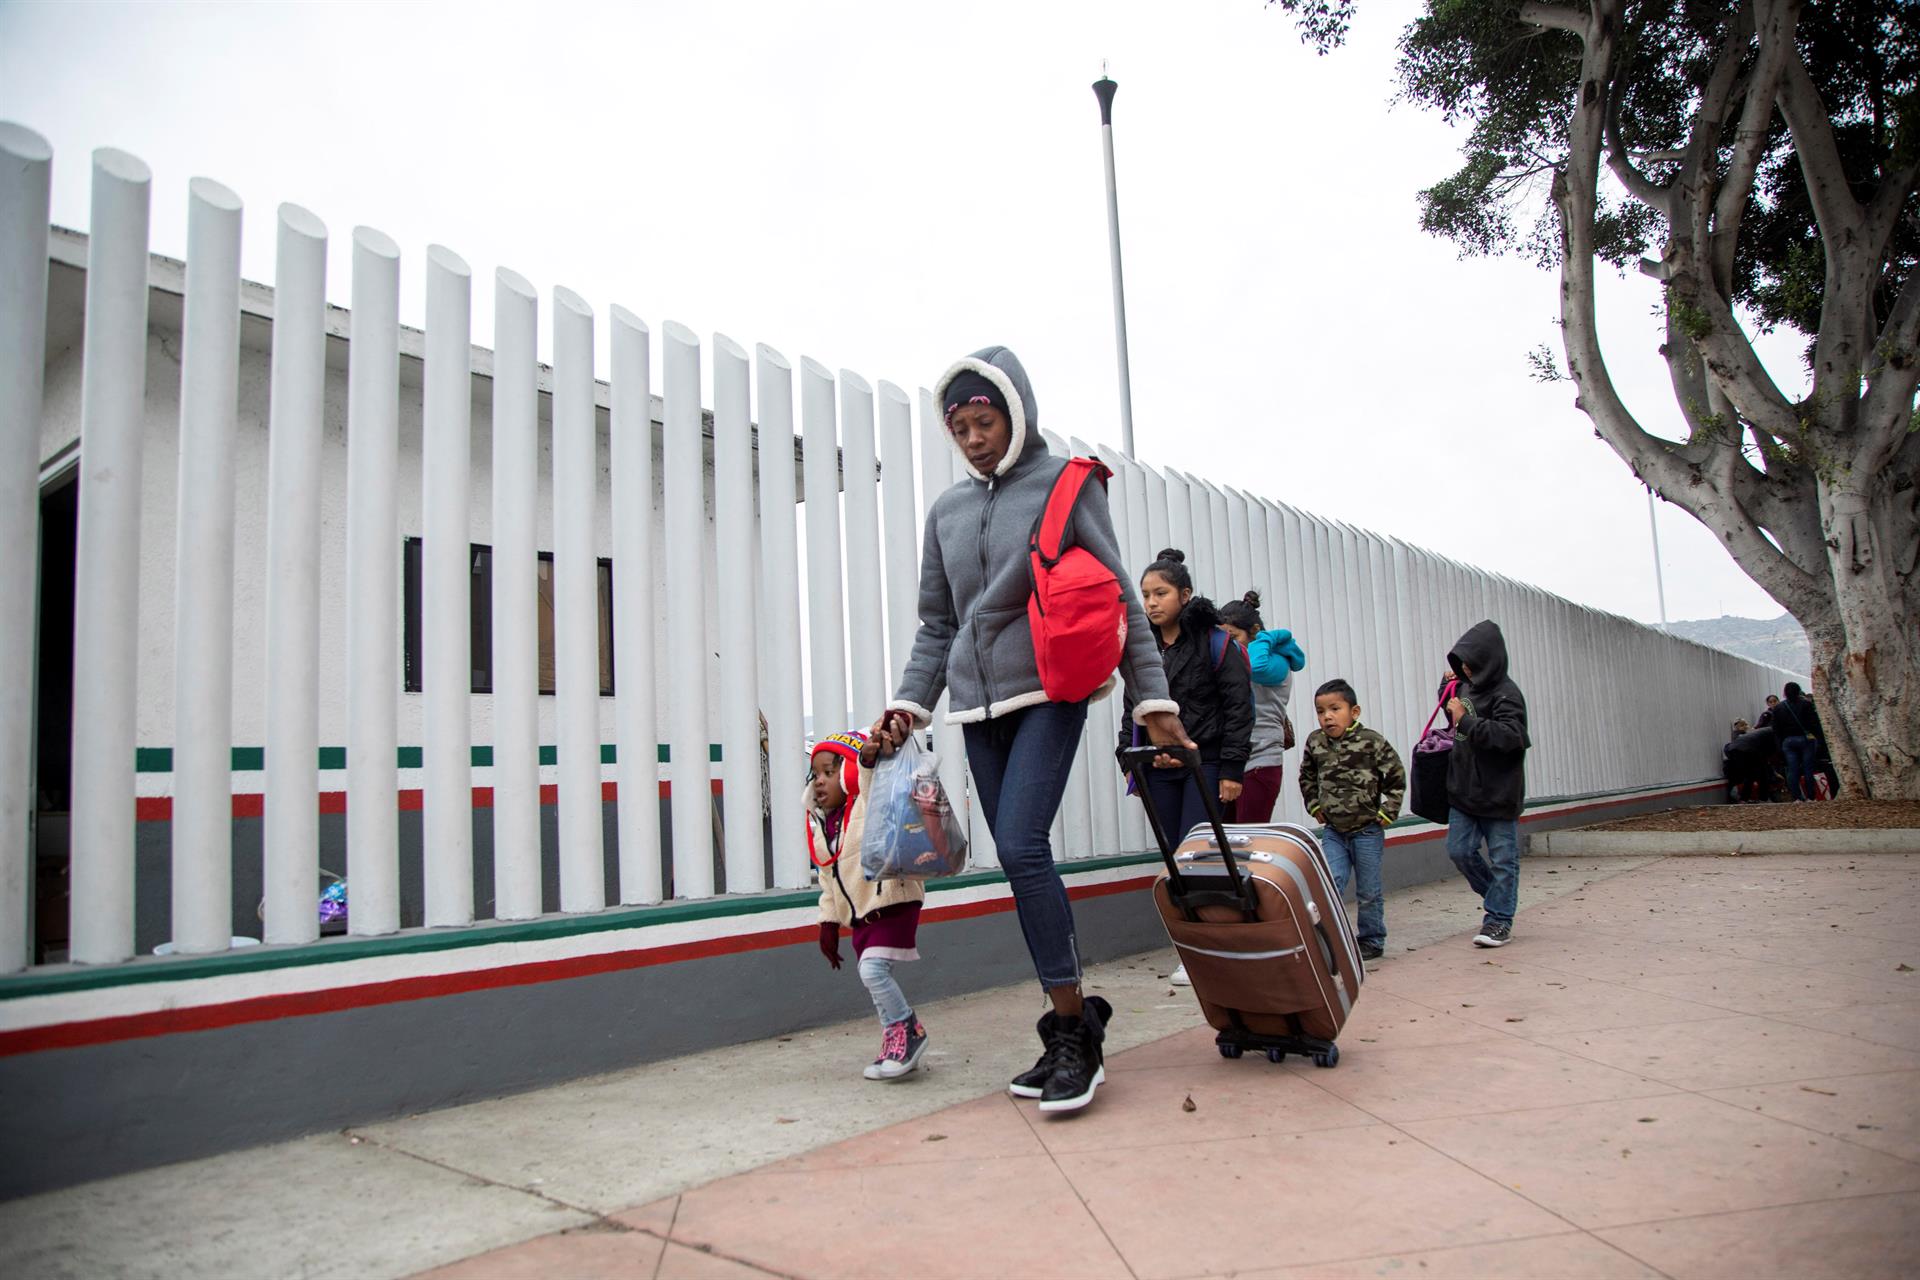 Imagen de archivo que muestra un grupo de migrantes en la frontera de la ciudad de Tijuana. EFE/Alonso Rochin
